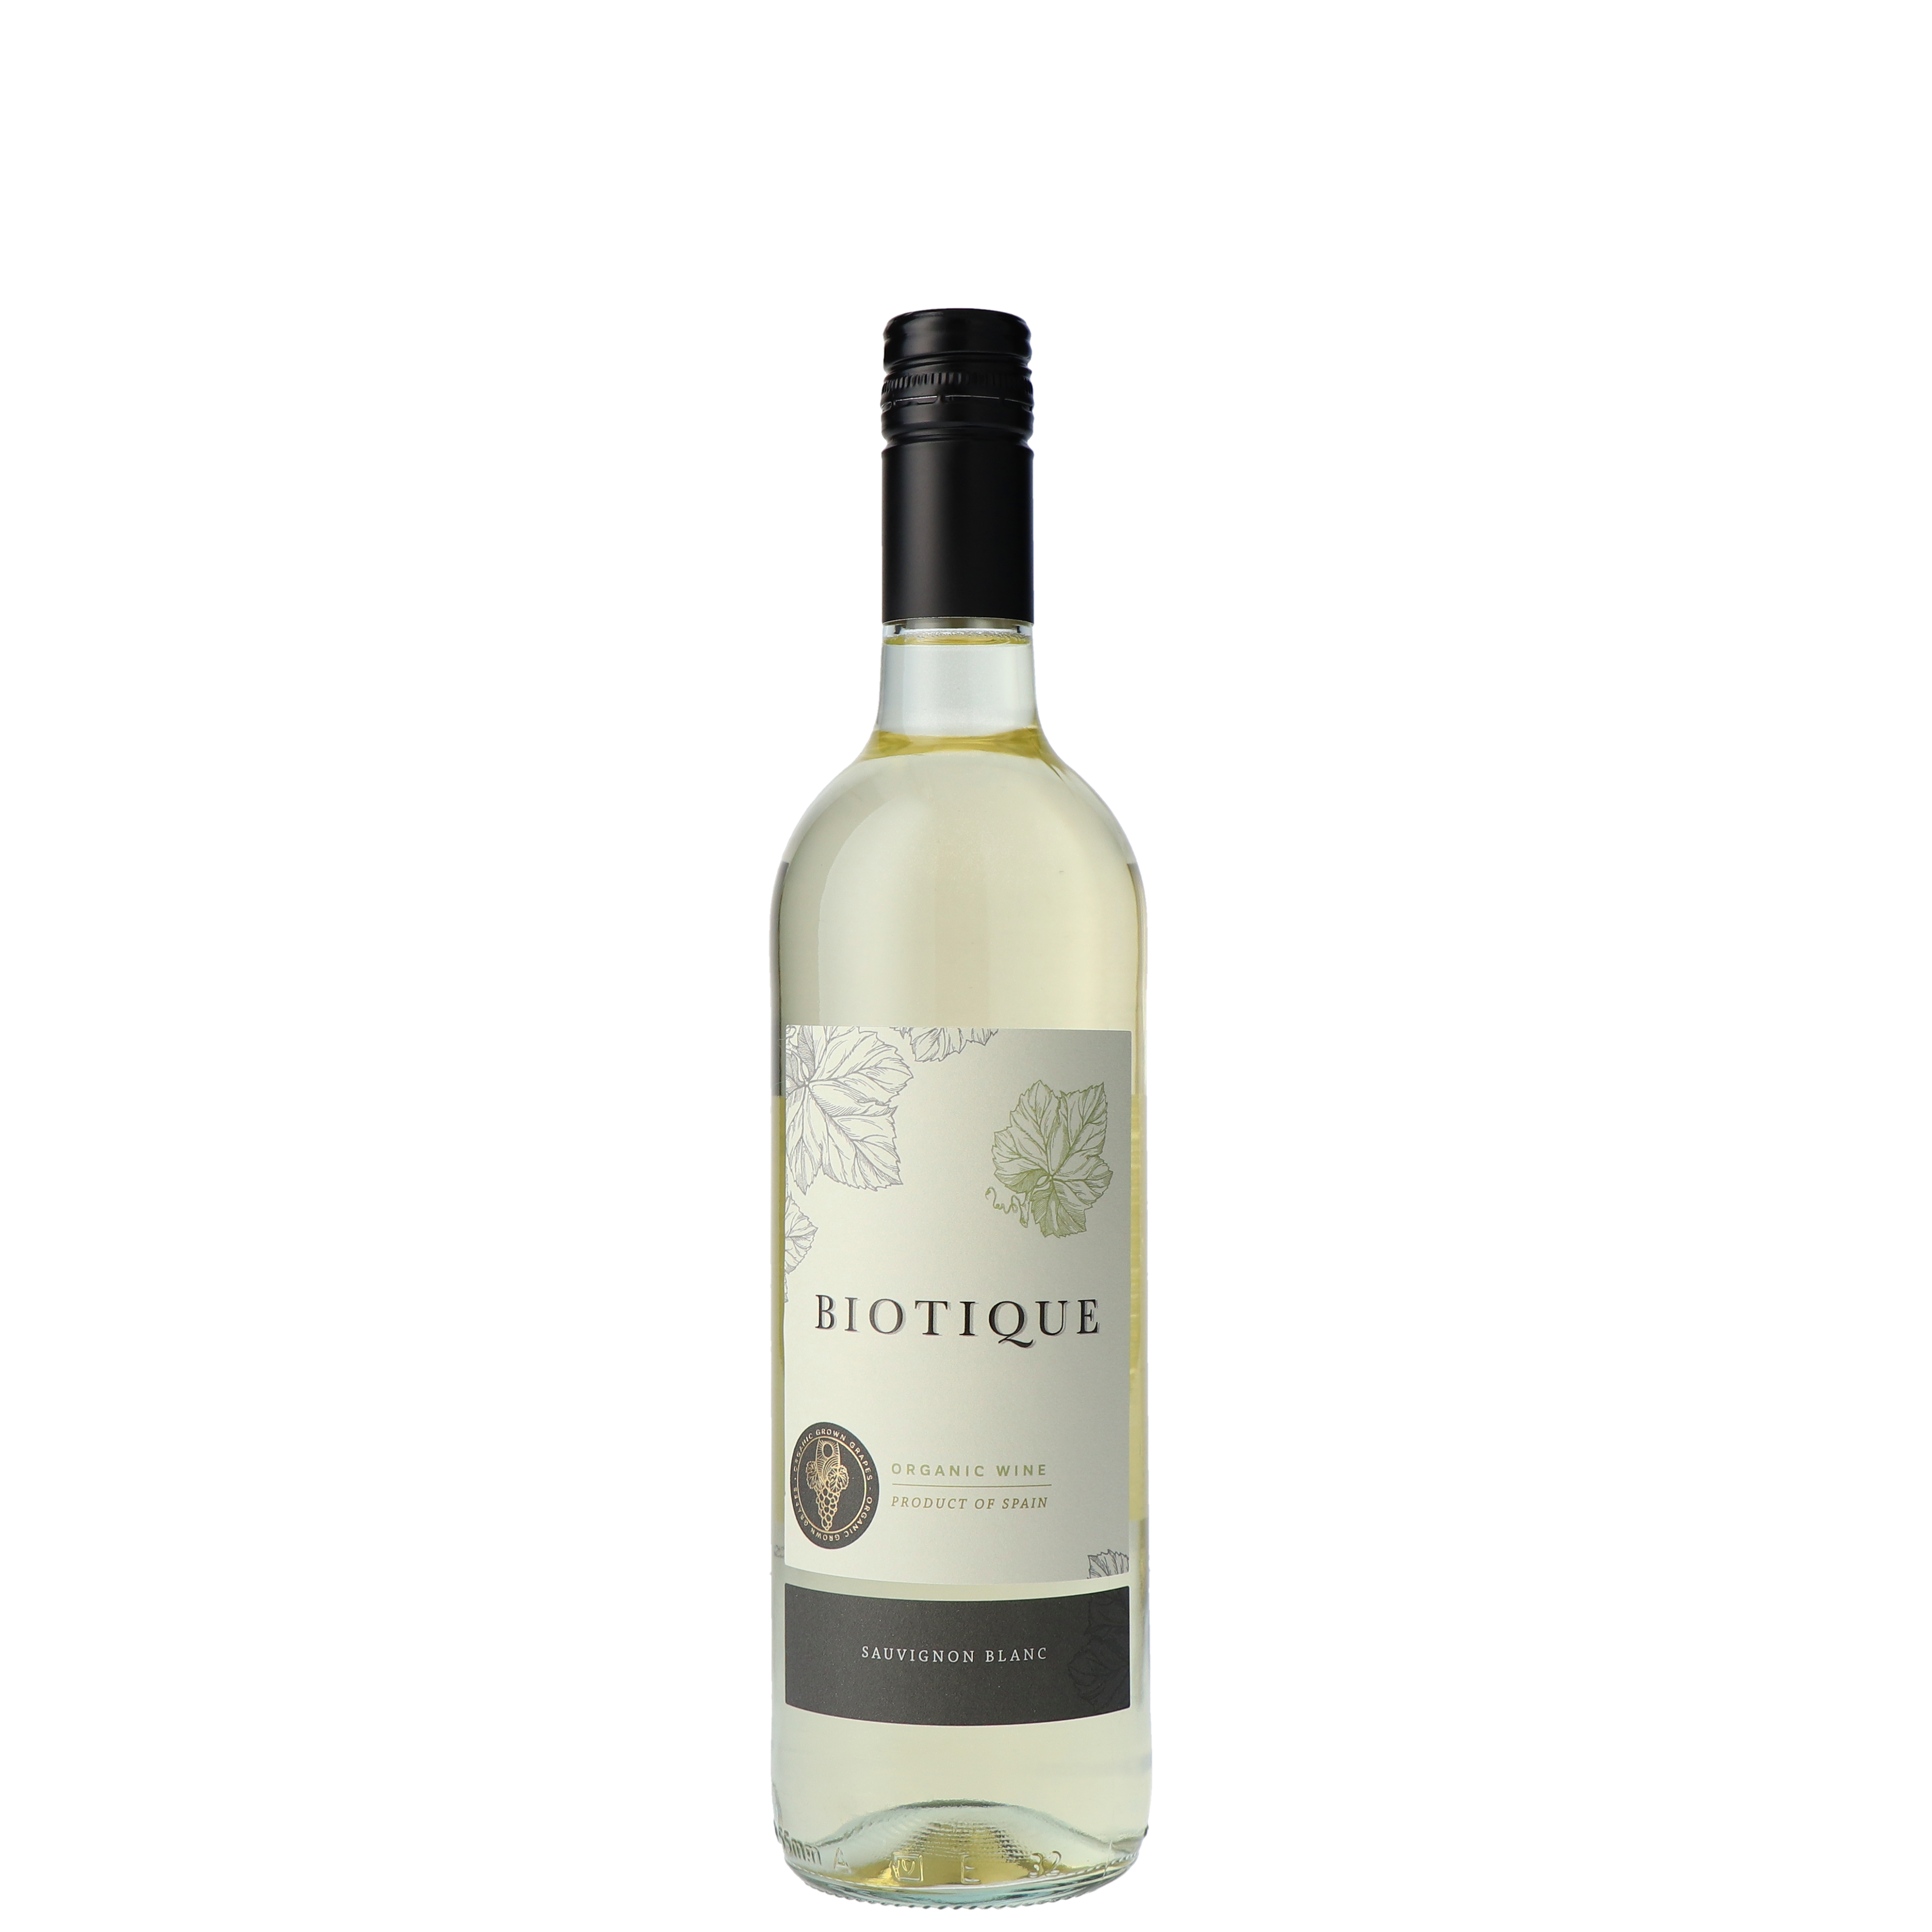 Biotique Sauvignon blanc Biologisch 2022 | Spaanse Witte wijn | La Mancha - Spanje | 0,75L